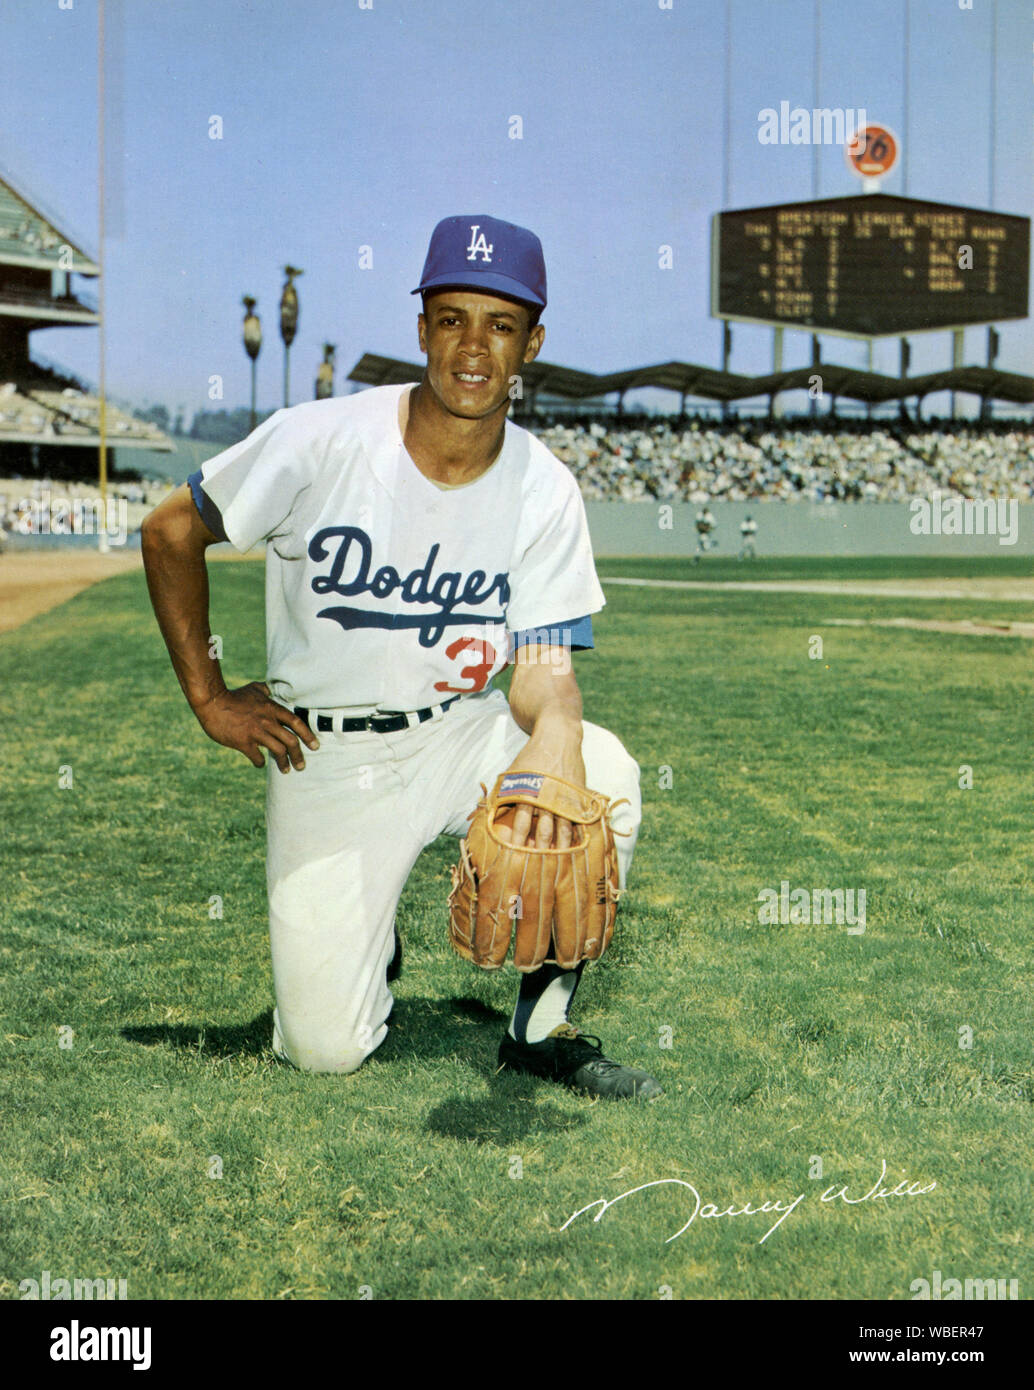 Maury Wills, l'étoile l'arrêt-court pour les Dodgers de Los Angeles dans les années 1960 pose pour une photo souvenir sur le domaine de l'ouverture récente du stade Dodger circa 1962. Banque D'Images